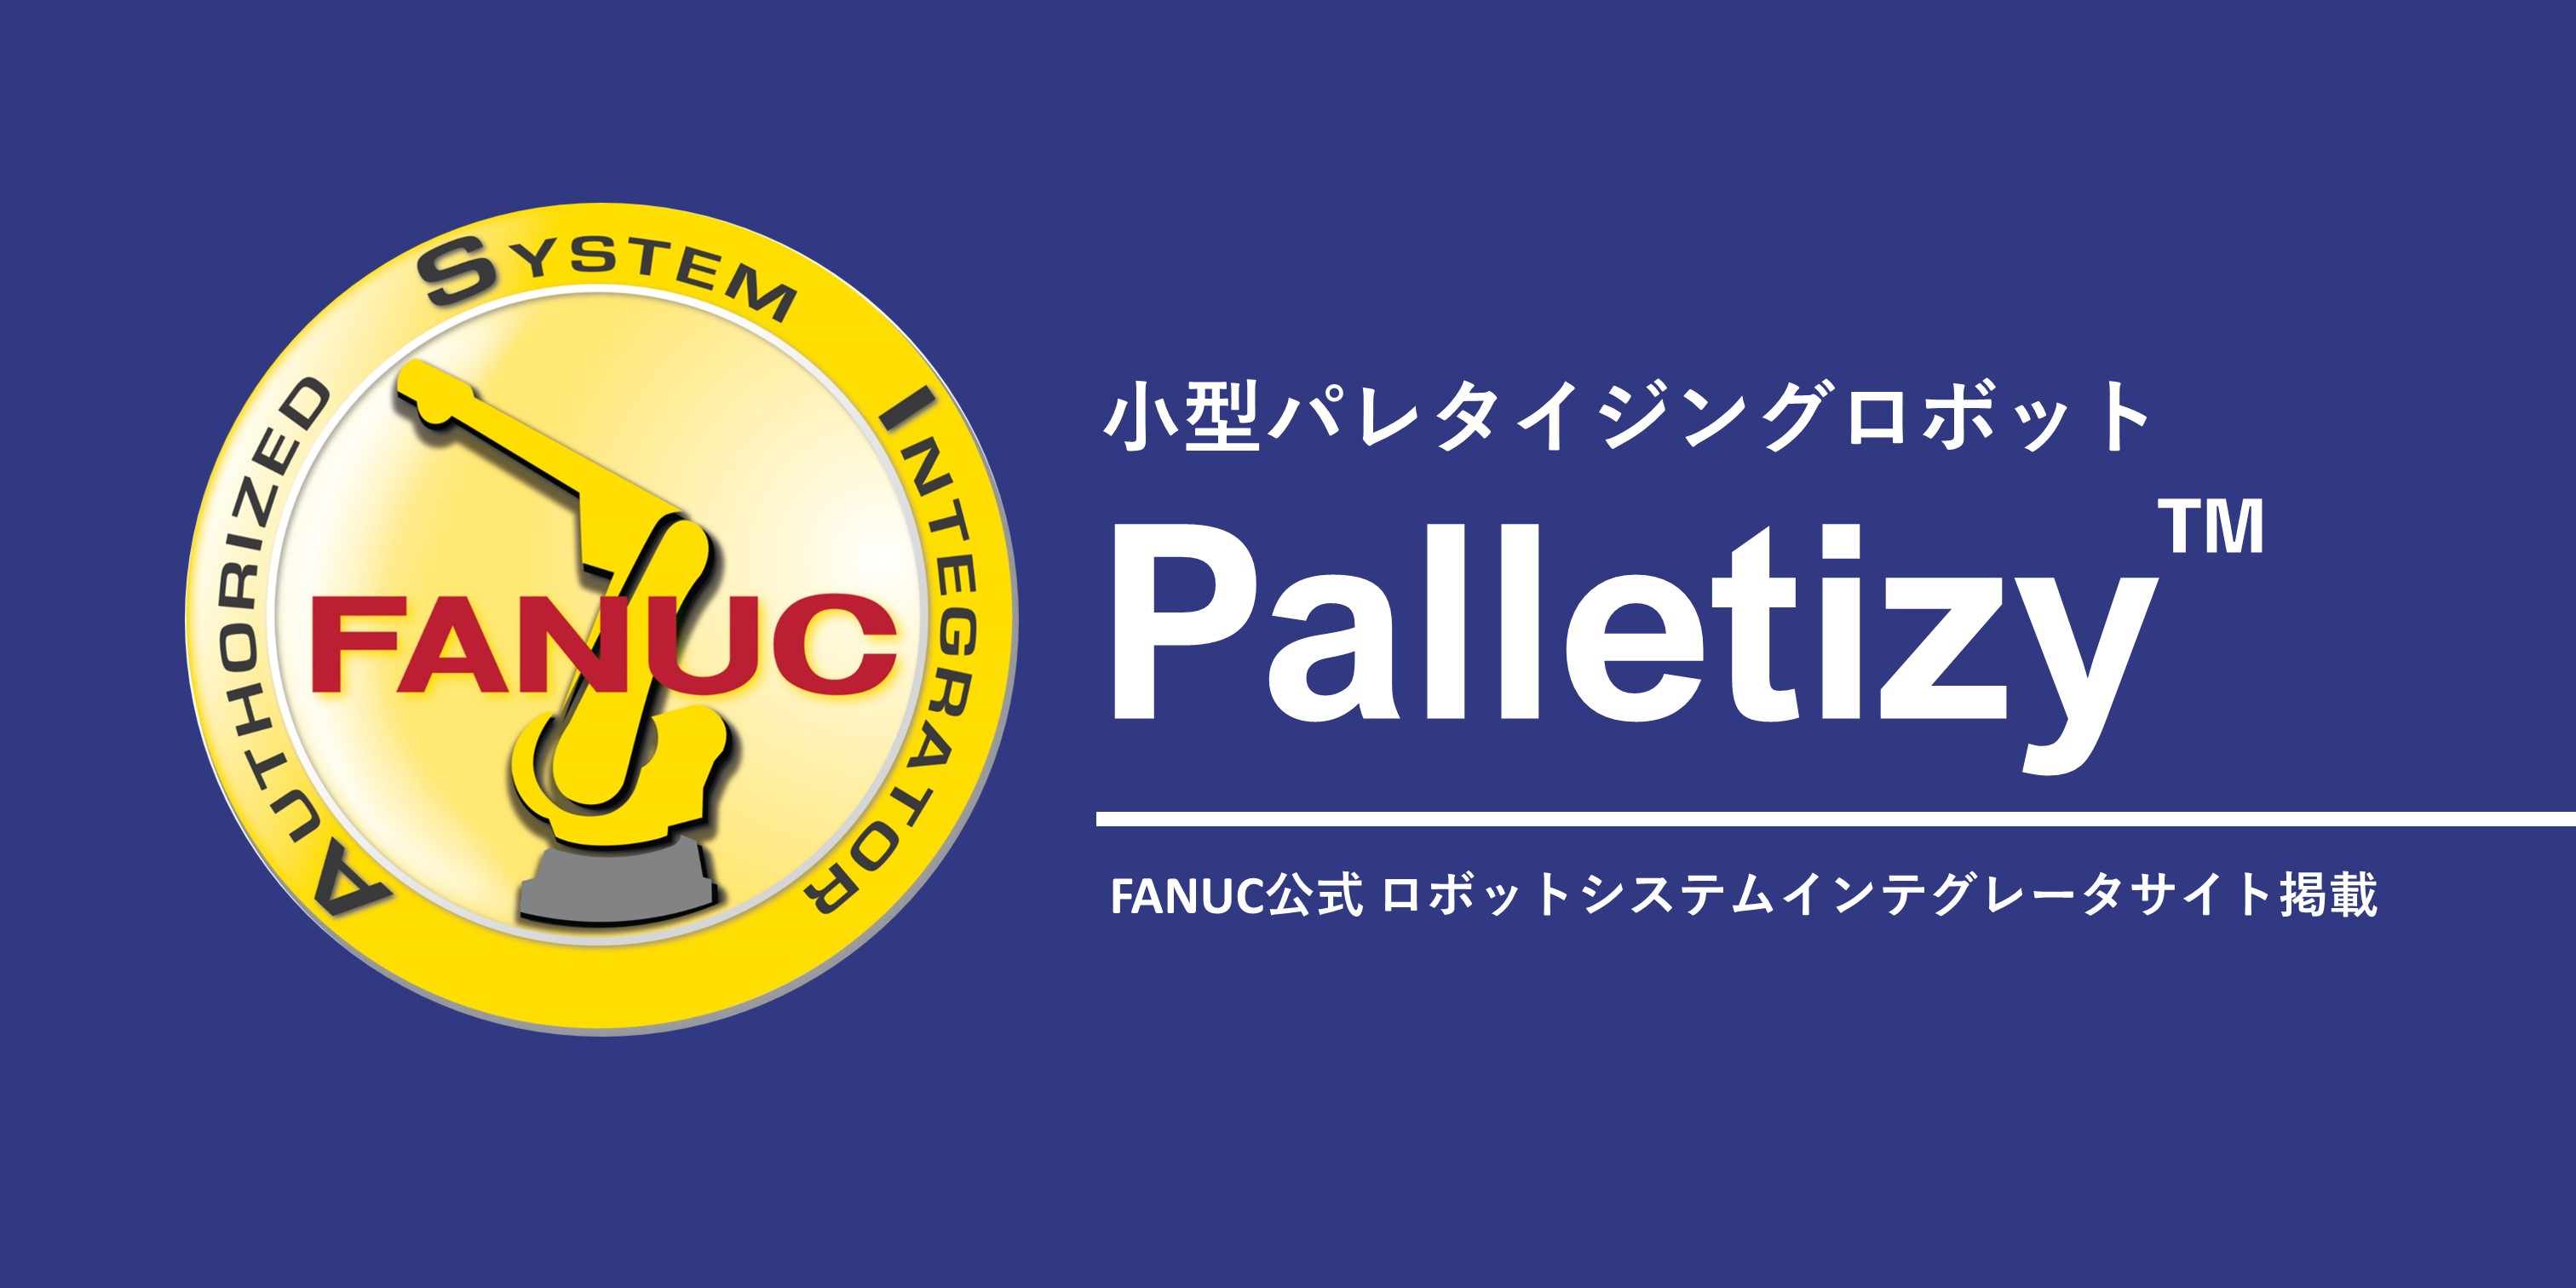 FANUC公式「ロボットシステムインテグレータサイト」に小型パレタイジングロボット「Palletizy™」が掲載されました